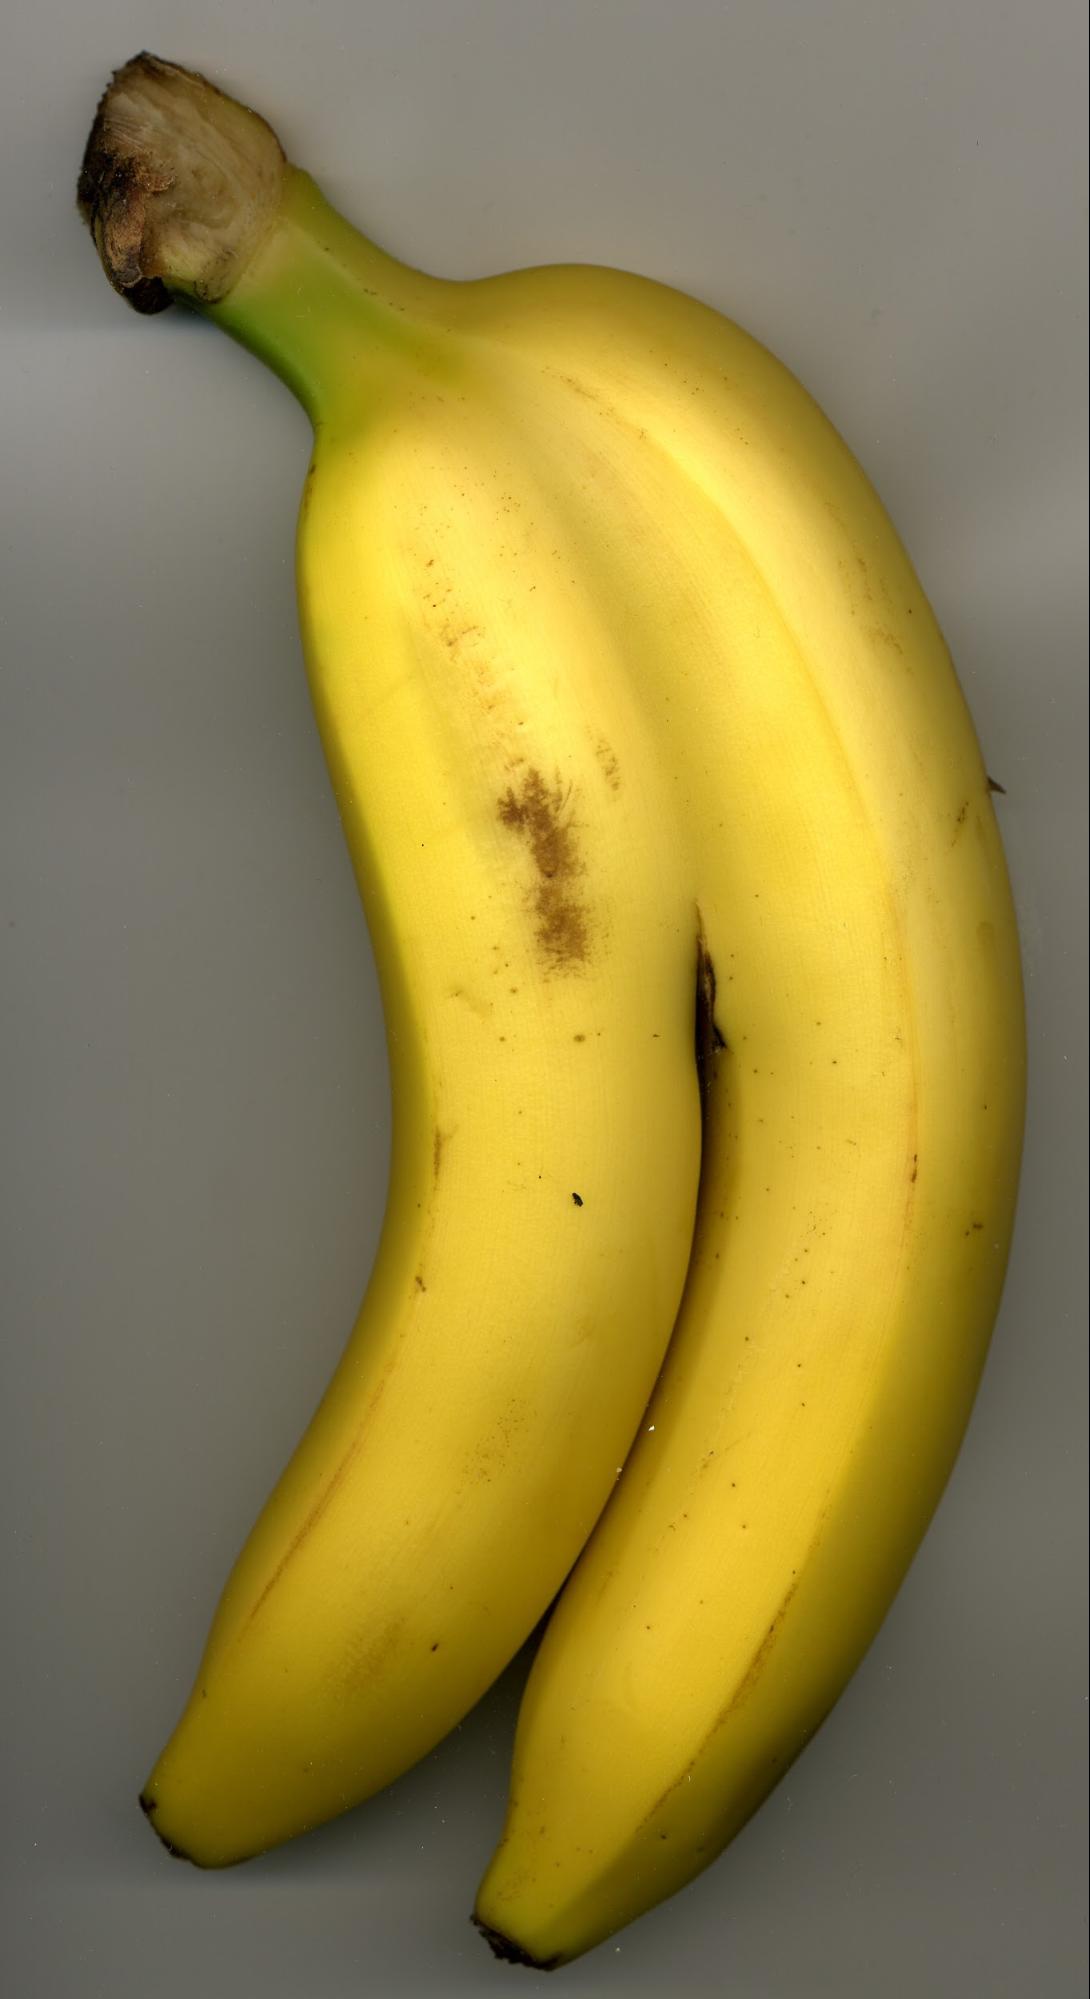 Bernhard Benke, Introducing: the amazing siamese banana, 2009.